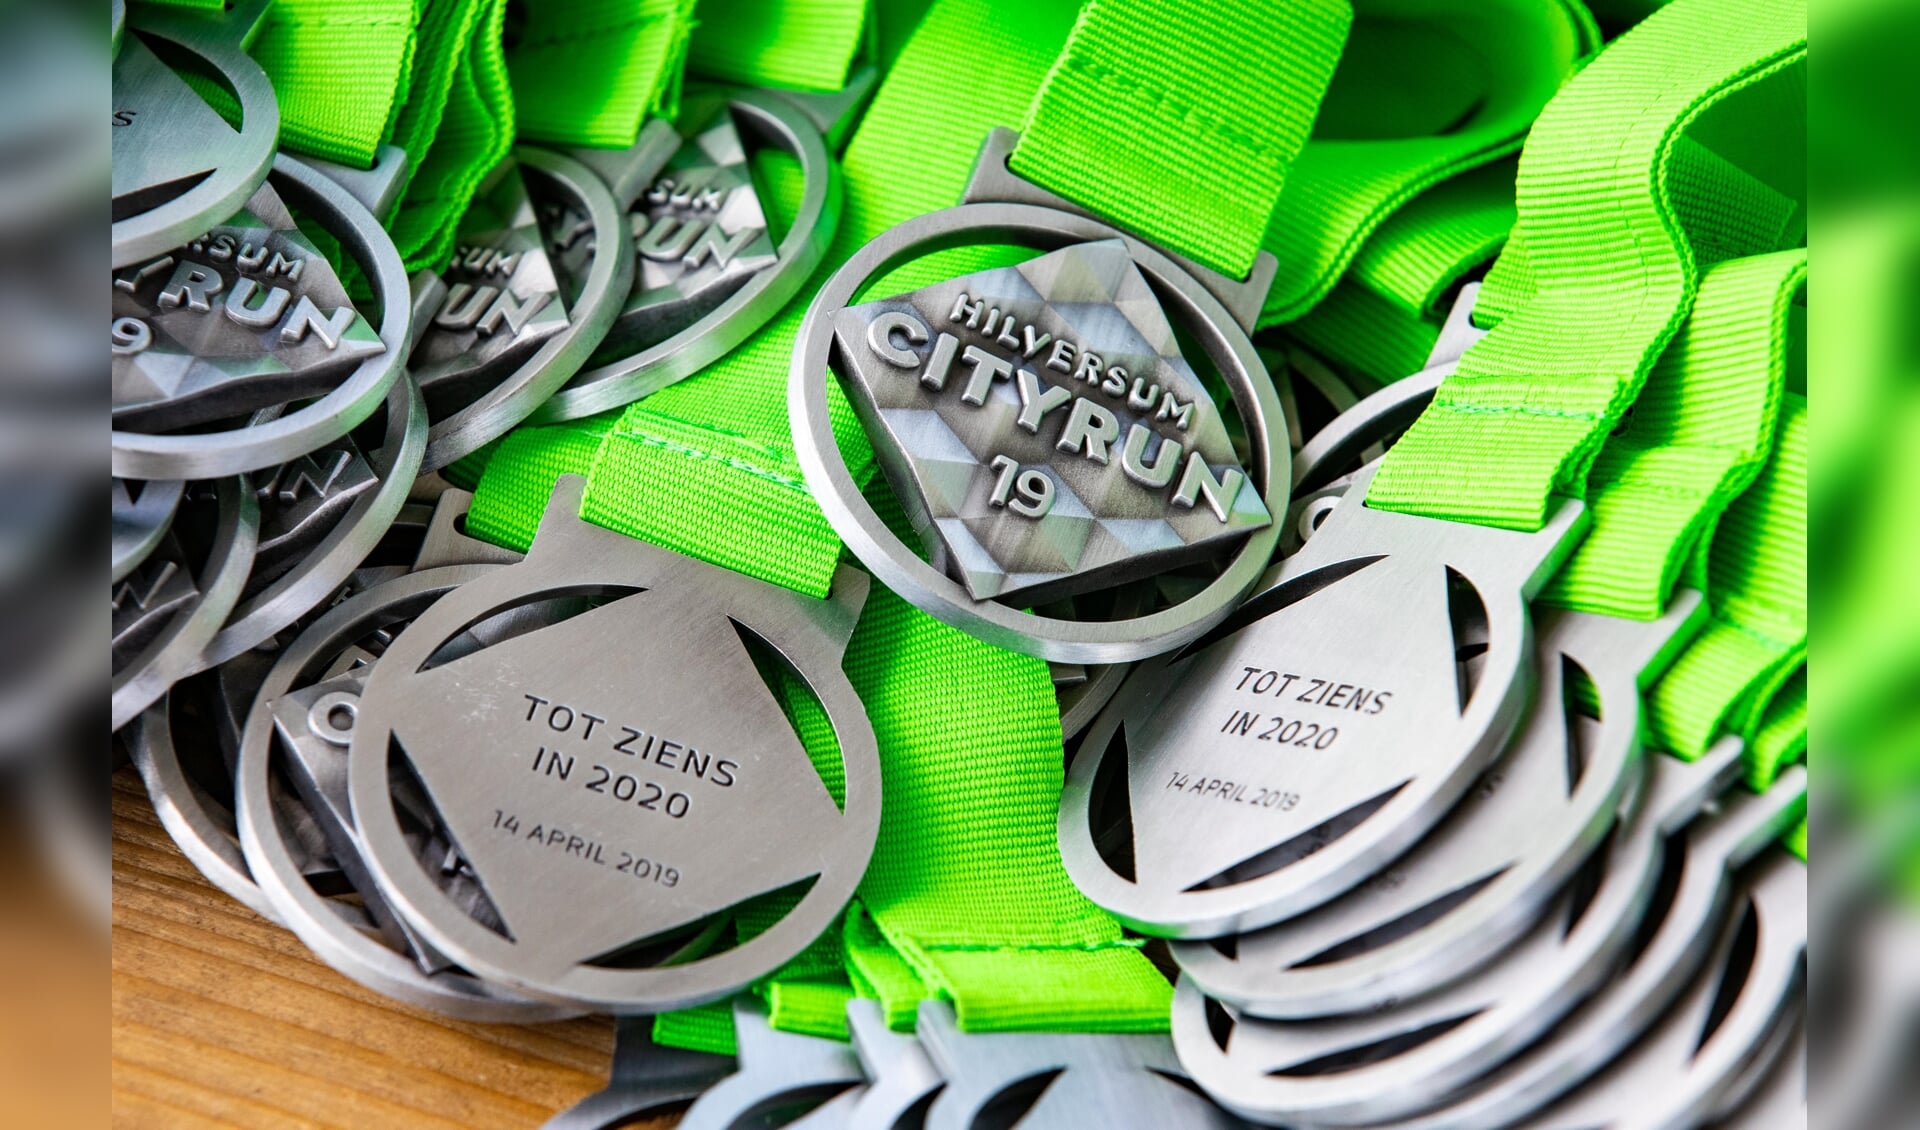 Voor de deelnemers aan de virtuele run liggen er inderdaad 2020-medailles klaar.